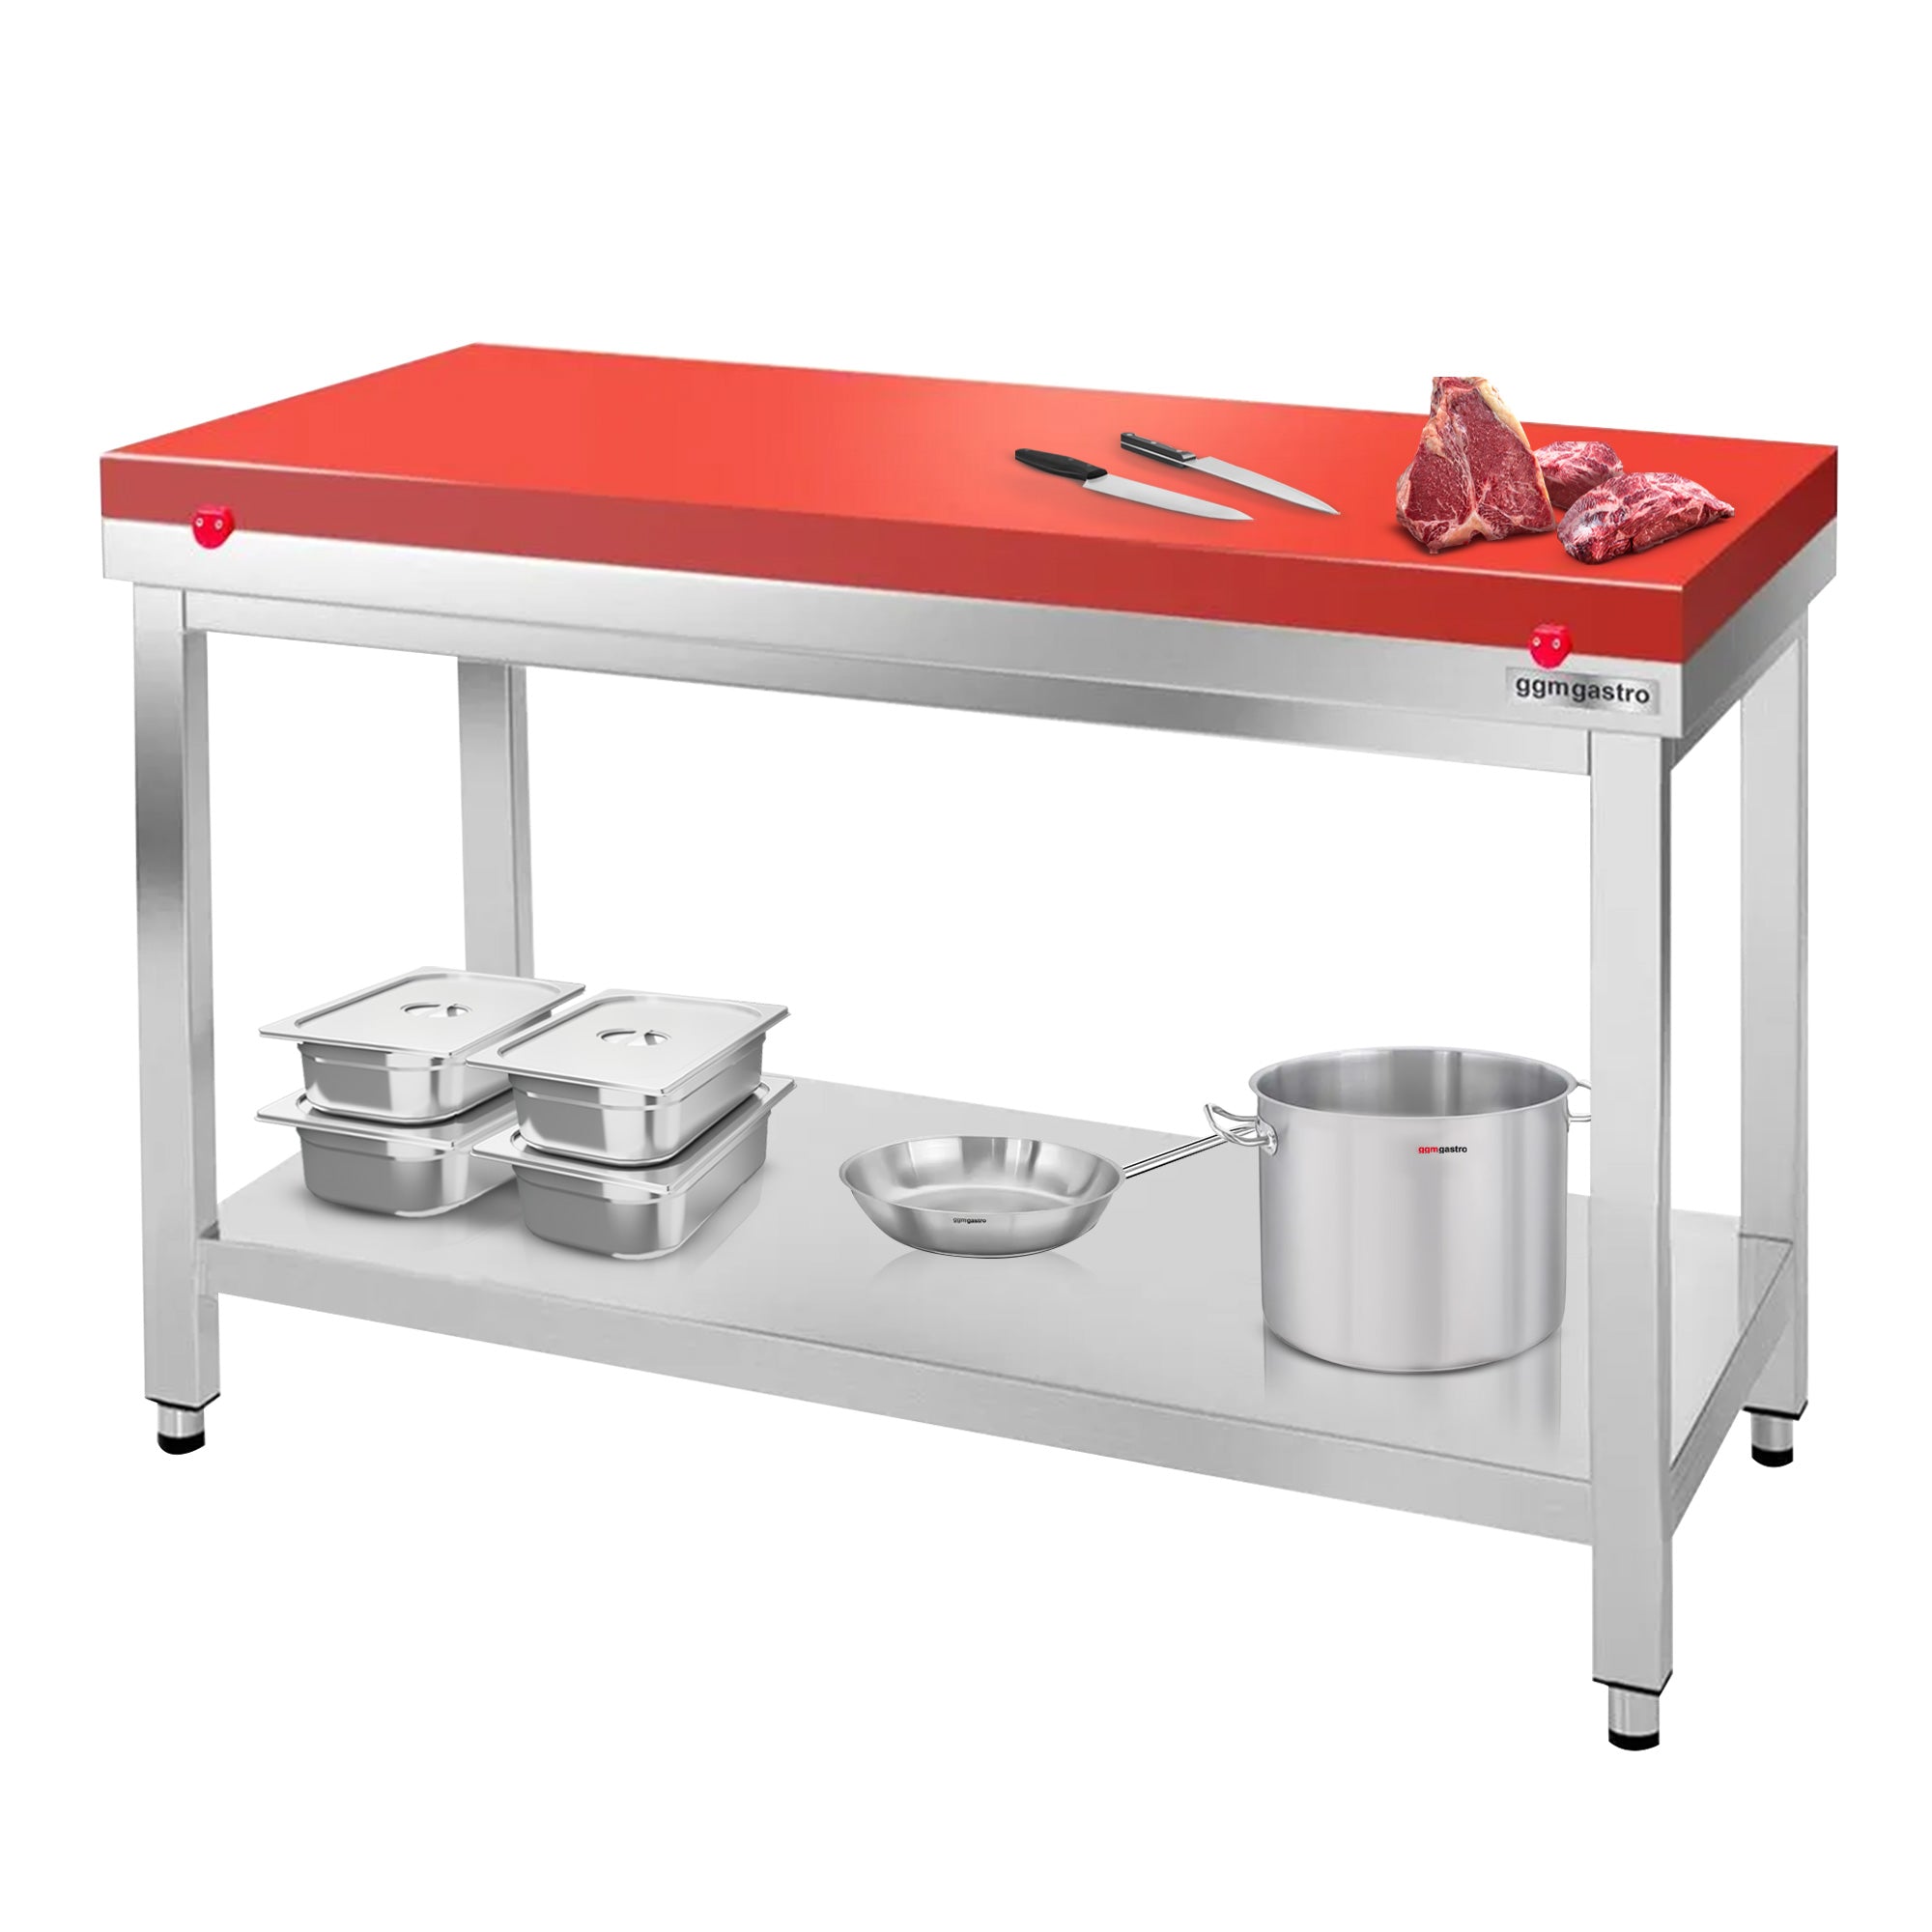 Arbeidsbord i rustfritt stål PREMIUM - 1,4 m - med underhylle - inkl. skjærebrett i rødt